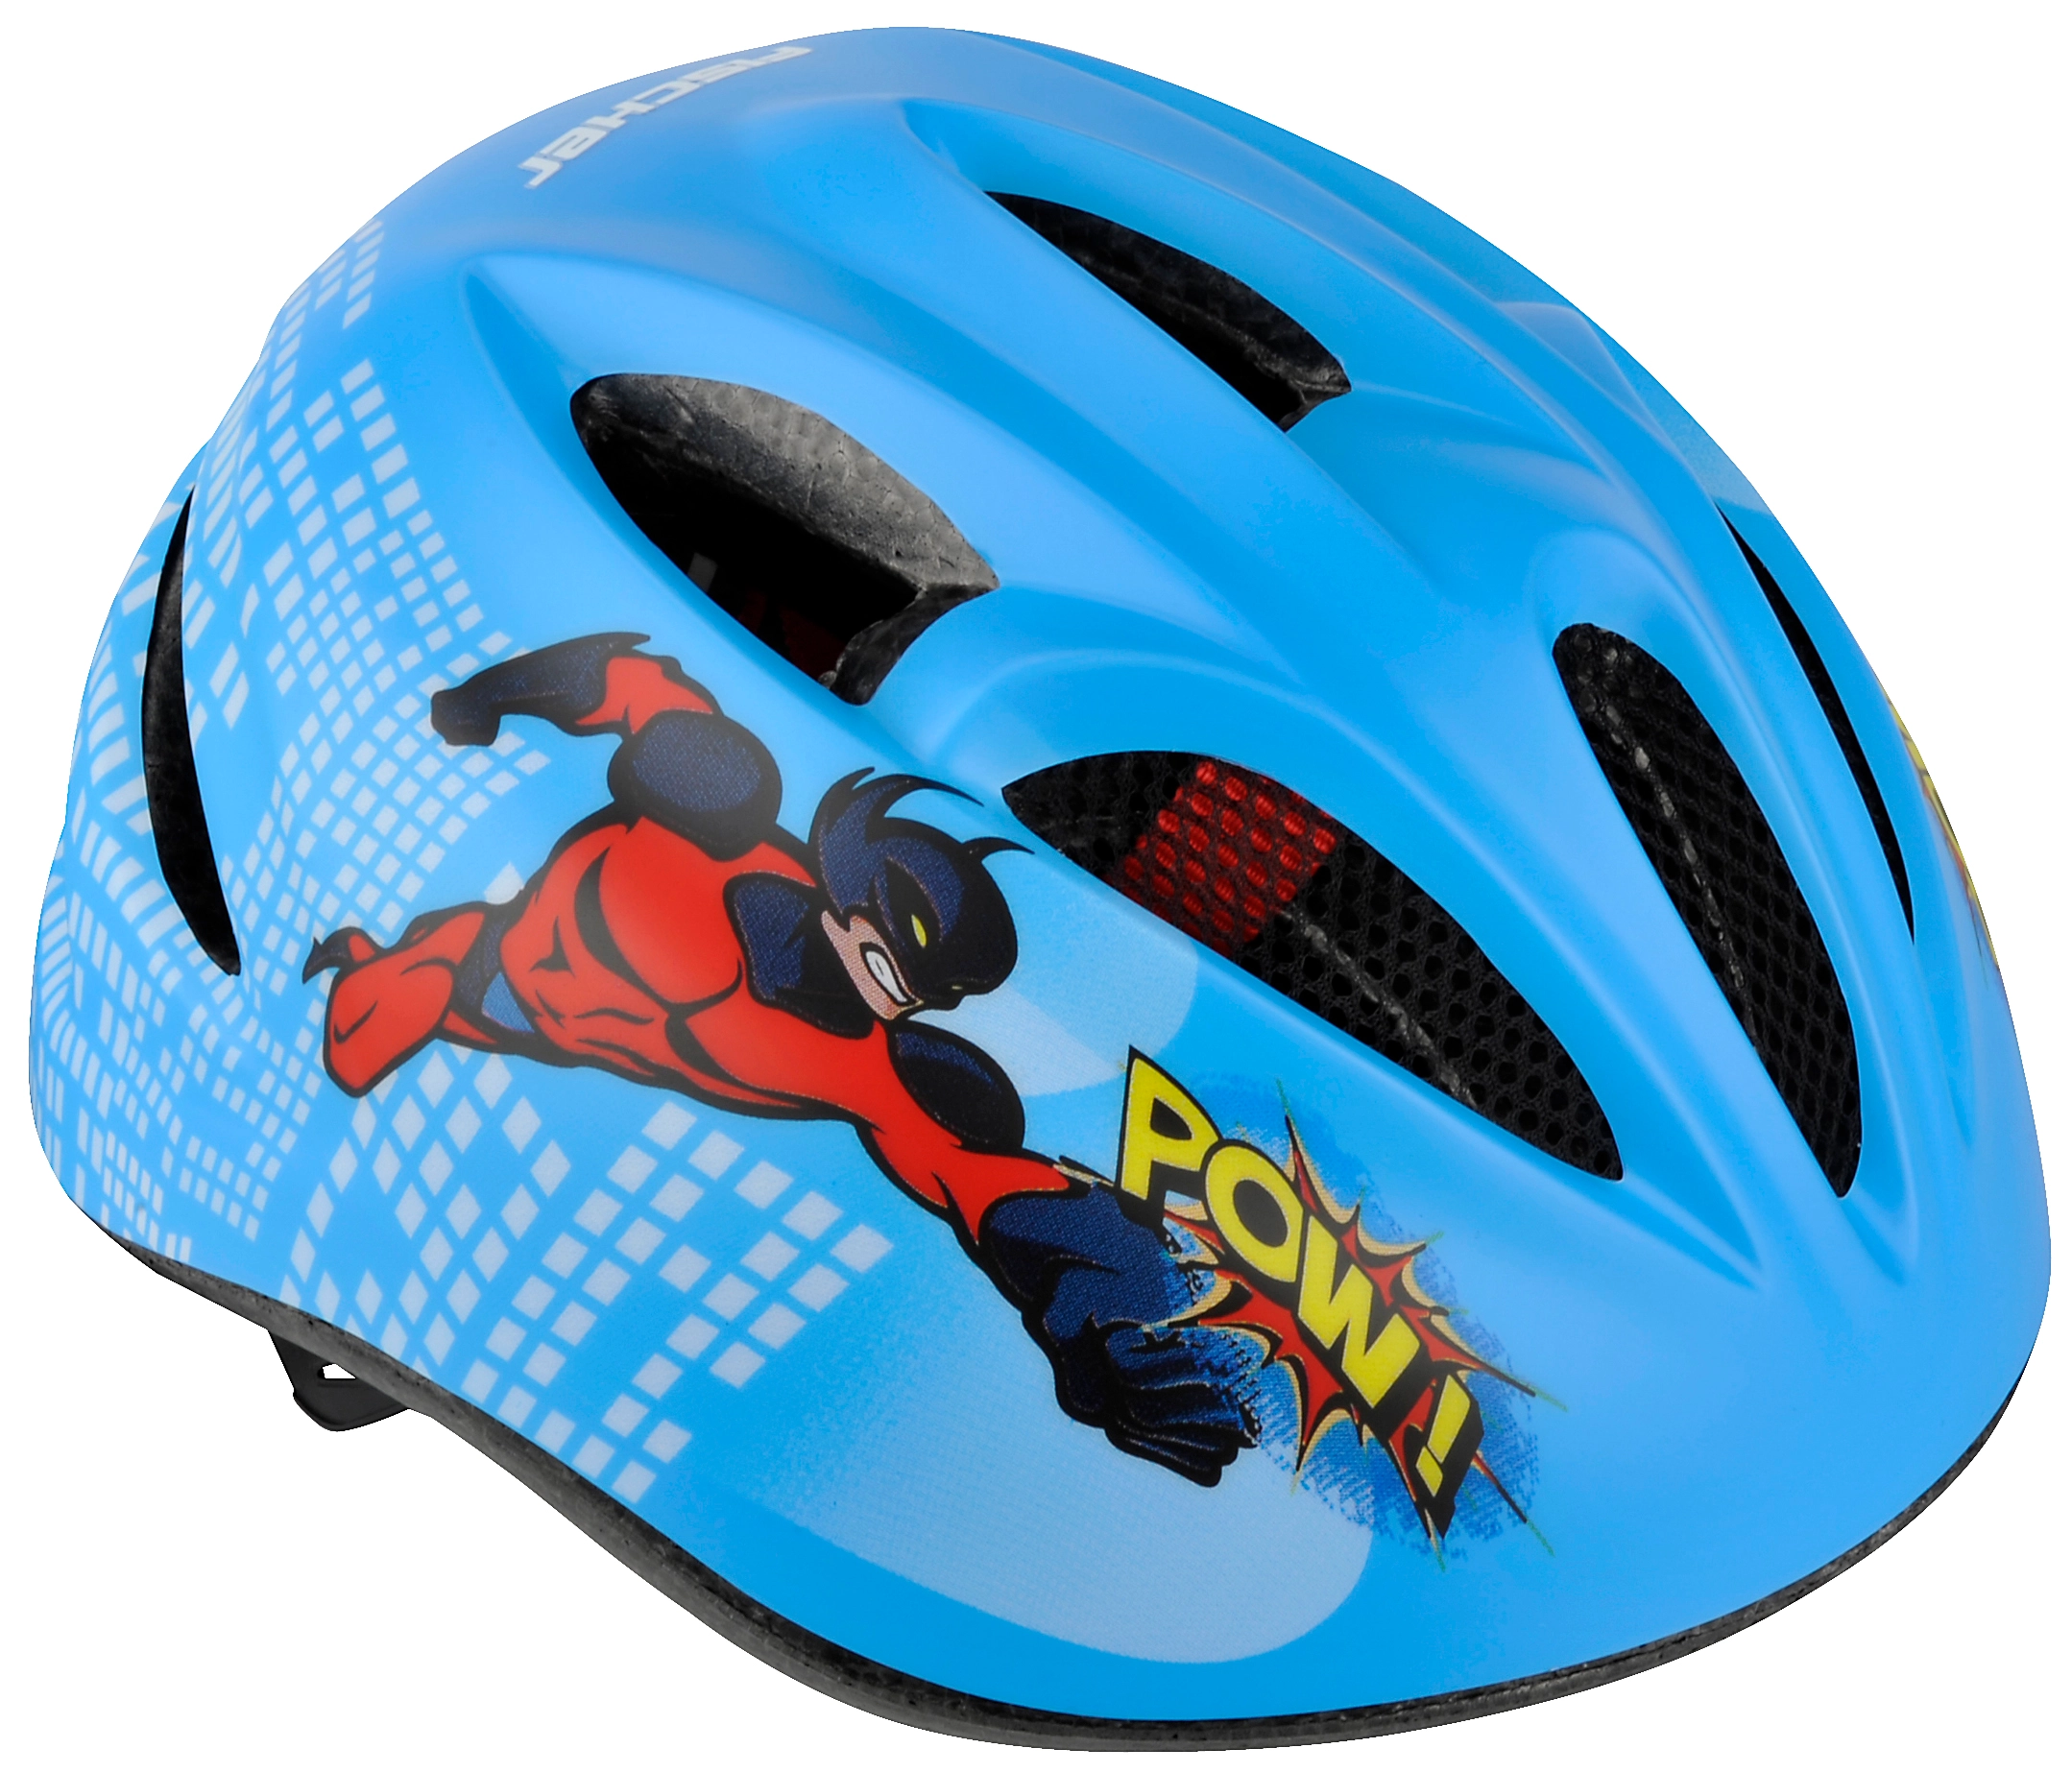 Fischer Fahrrad-Helm für Kinder Motiv Comic Blau Gr. S/M kaufen bei OBI